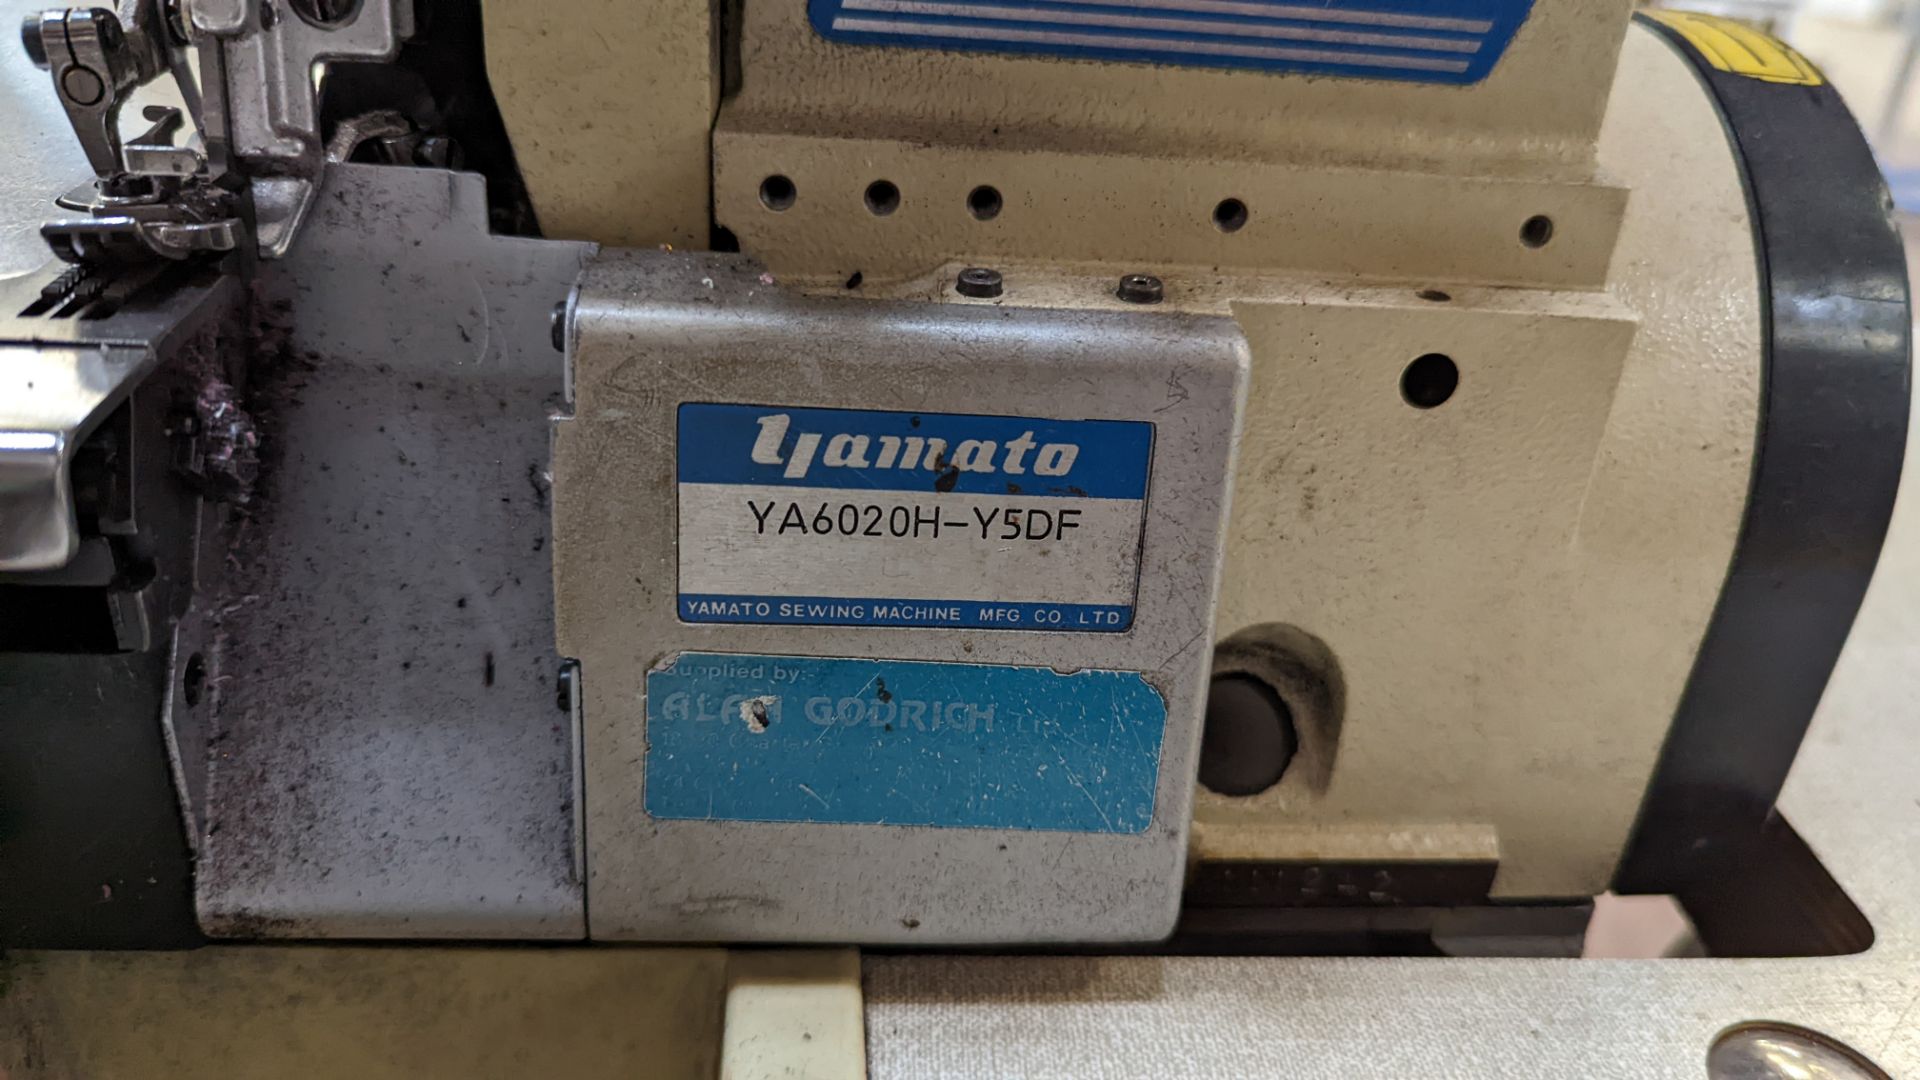 Yamato overlocker on table, model YA6020H-Y5DF - Image 9 of 15